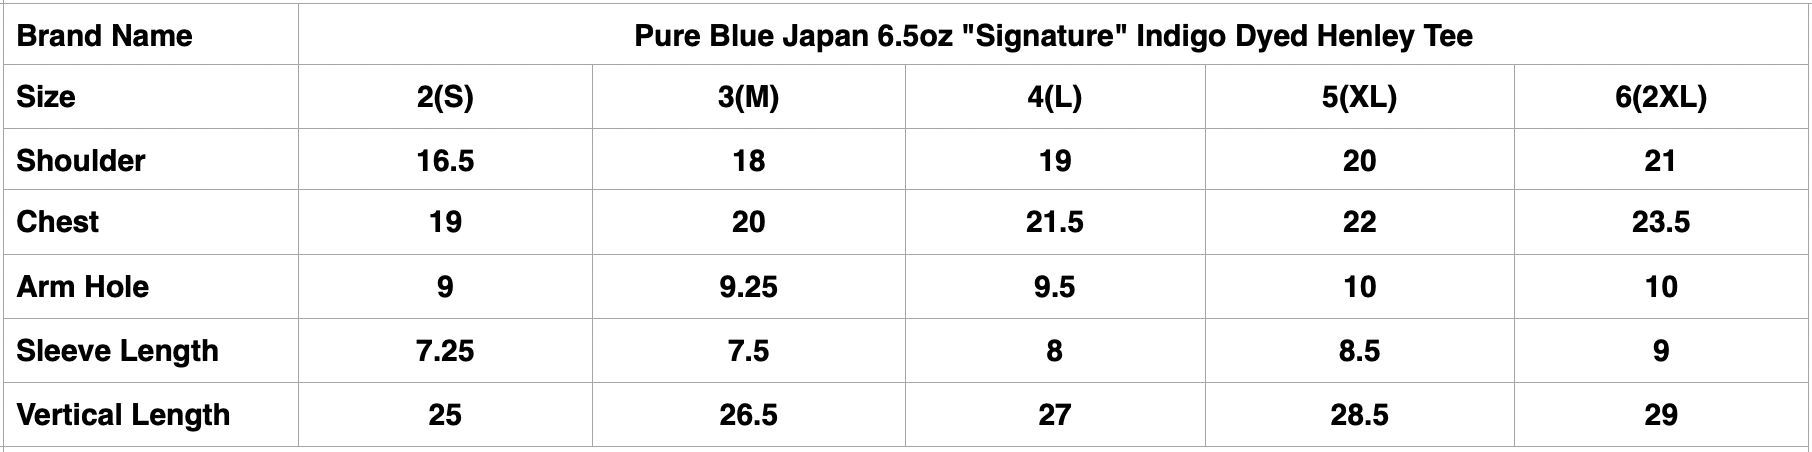 Pure Blue Japan 6.5oz "Signature" Indigo Dyed Henley Tee (Greencast Indigo)